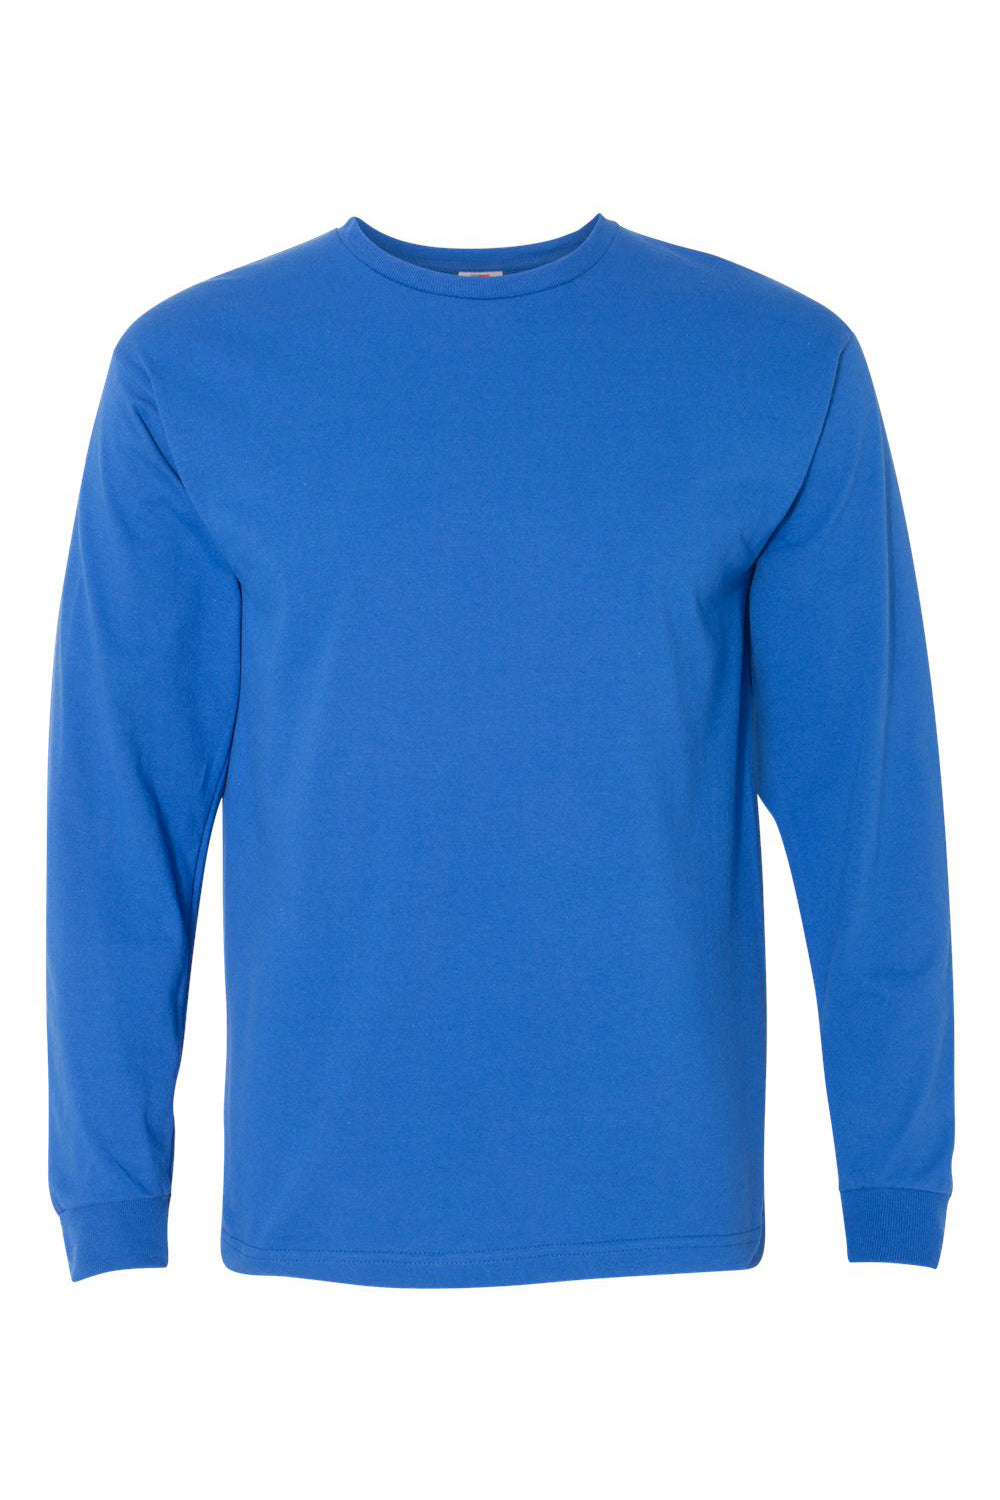 Bayside BA5060 Mens USA Made Long Sleeve Crewneck T-Shirt Royal Blue Flat Front